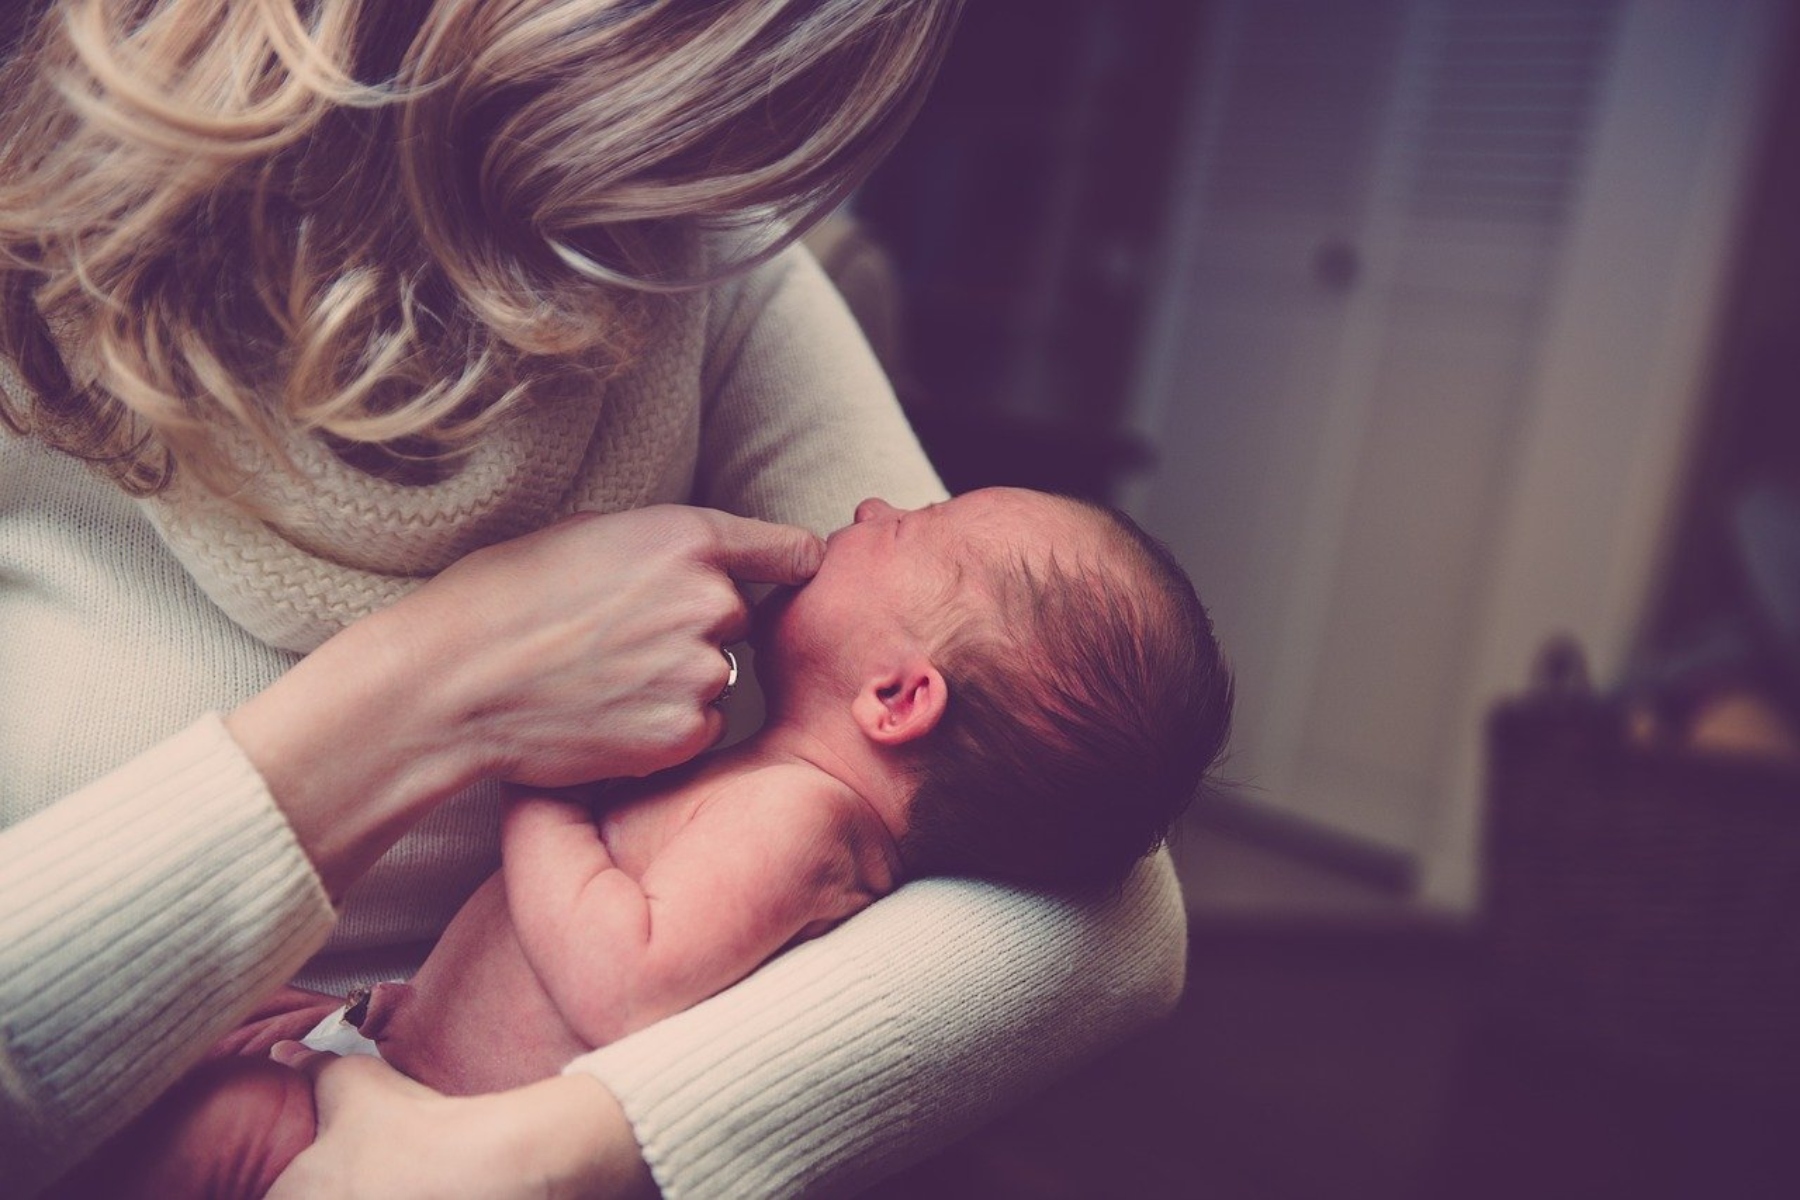 Μαμά νεογέννητο: Τακτικές αυτοφροντίδας μιας νέας μαμάς